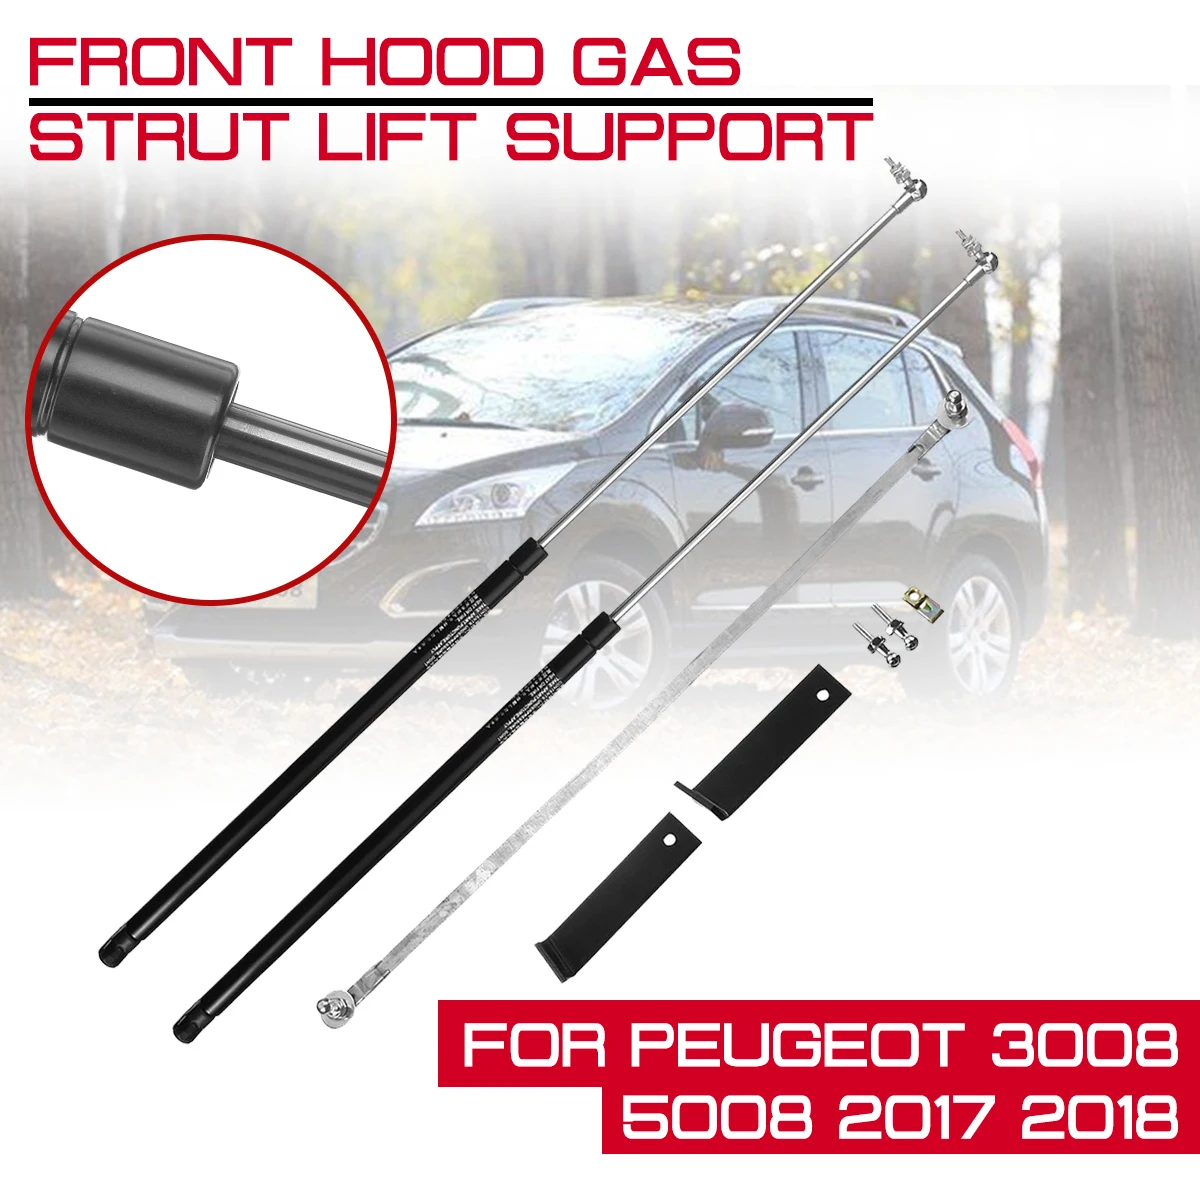 

Car Front Engine Cover Bonnet Hood Shock Lift Strut For Peugeot 3008 5008 2017 2018 Struts Bar Support Rod Arm Gas Spring